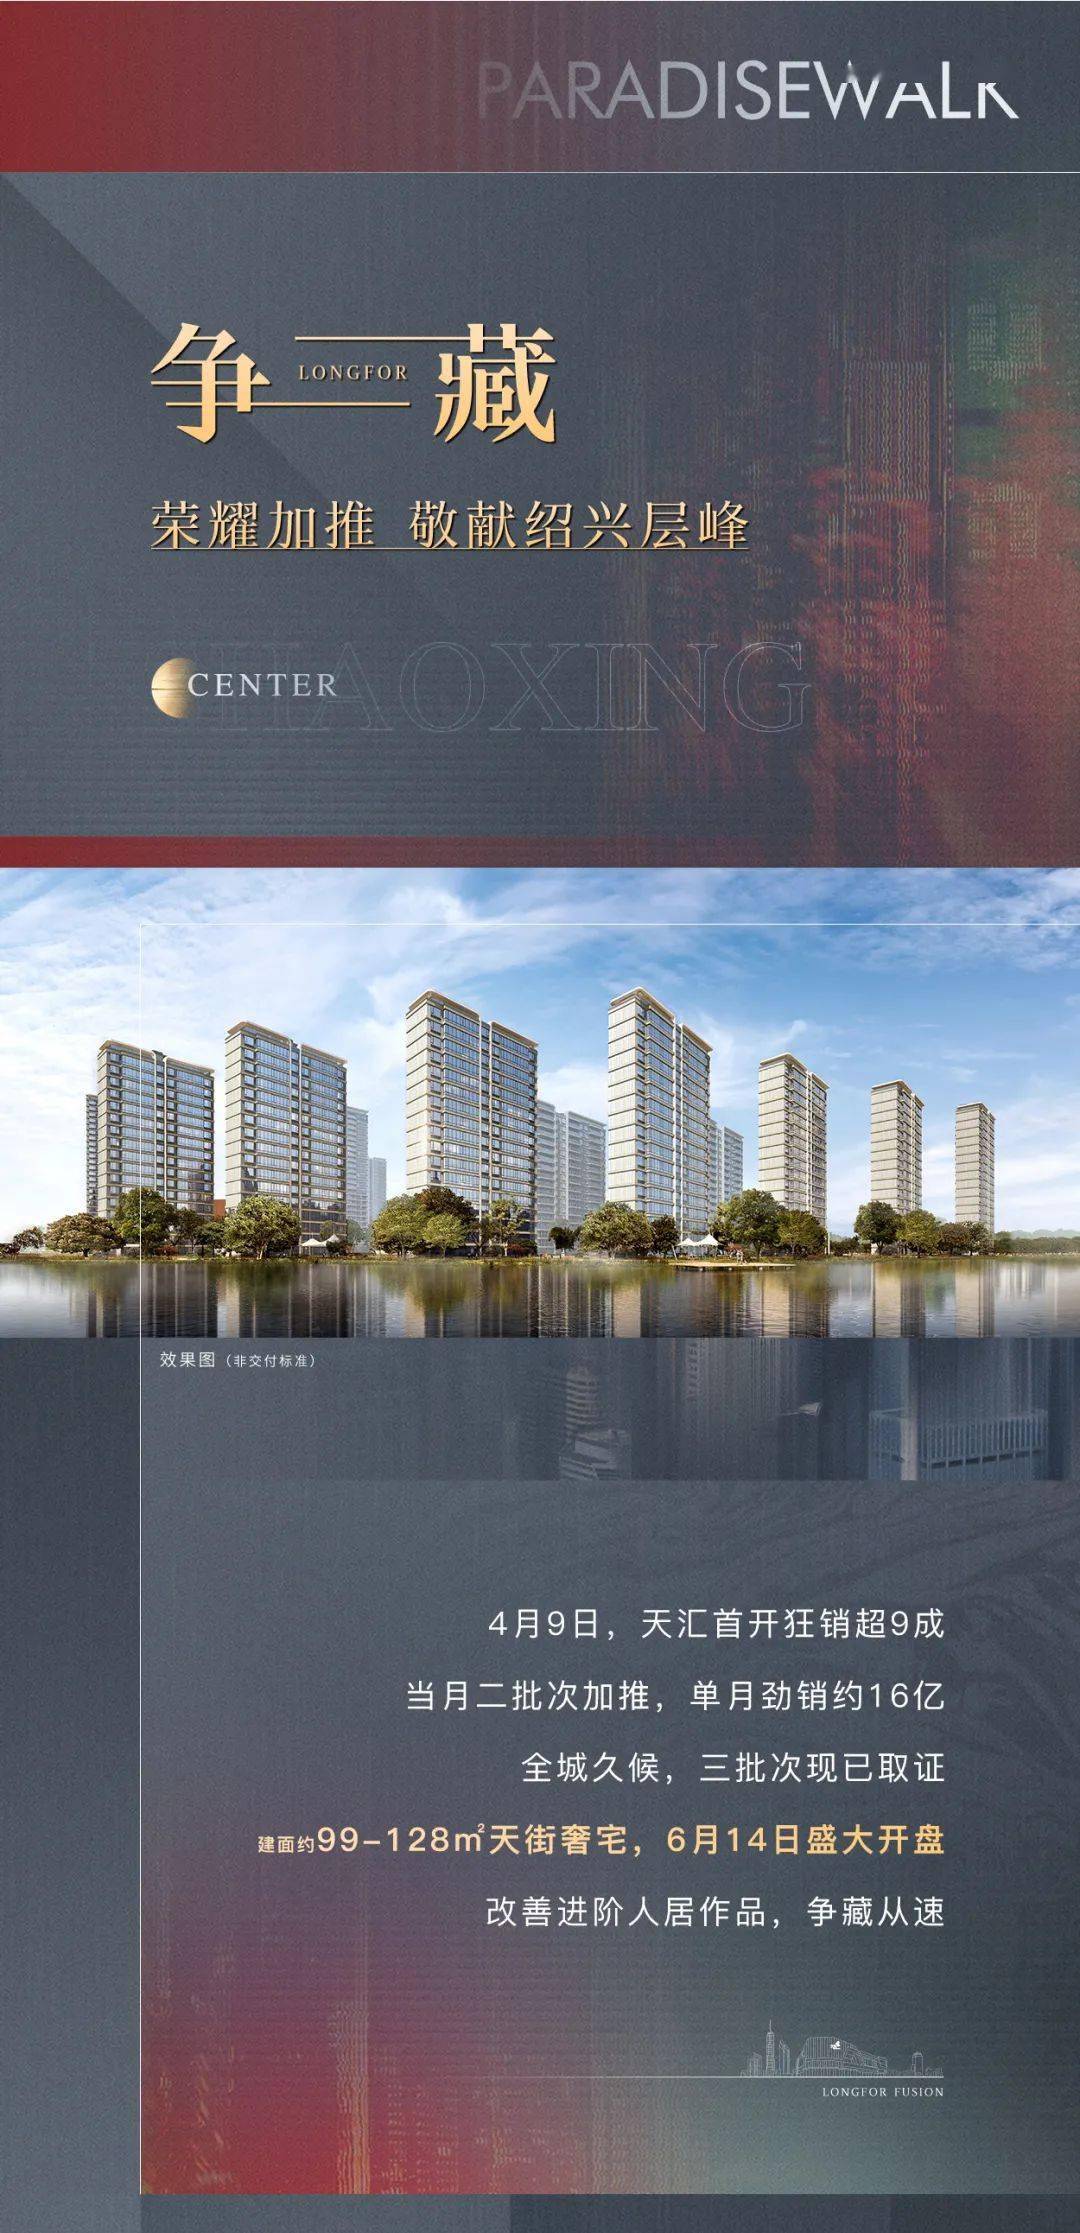 本项目推广名为"龙湖金帝·天汇",核准地名为"天汇府".